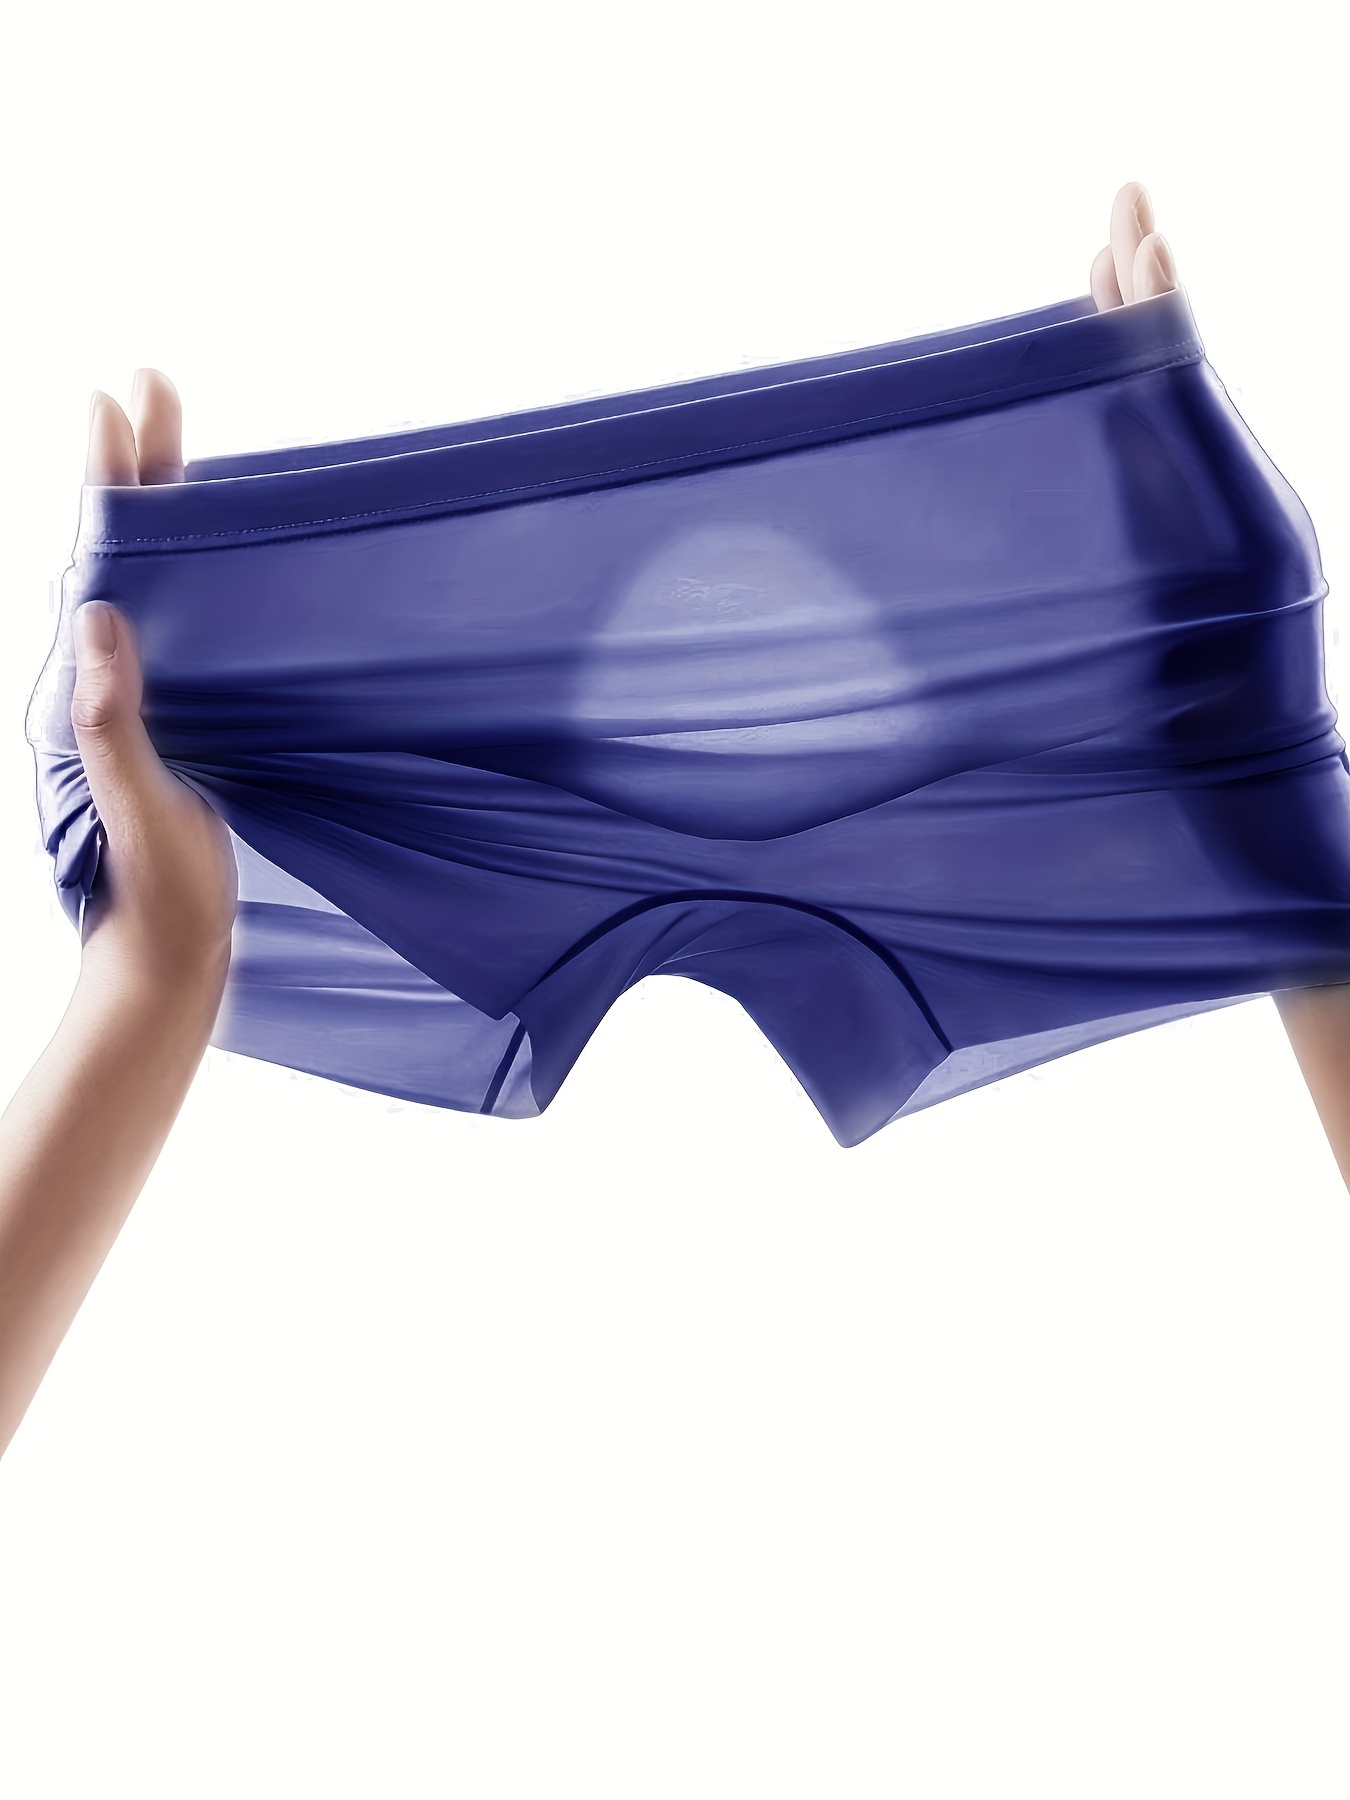 Best Seller Seamless Underwear Women, Ice Silk Thin Sexy